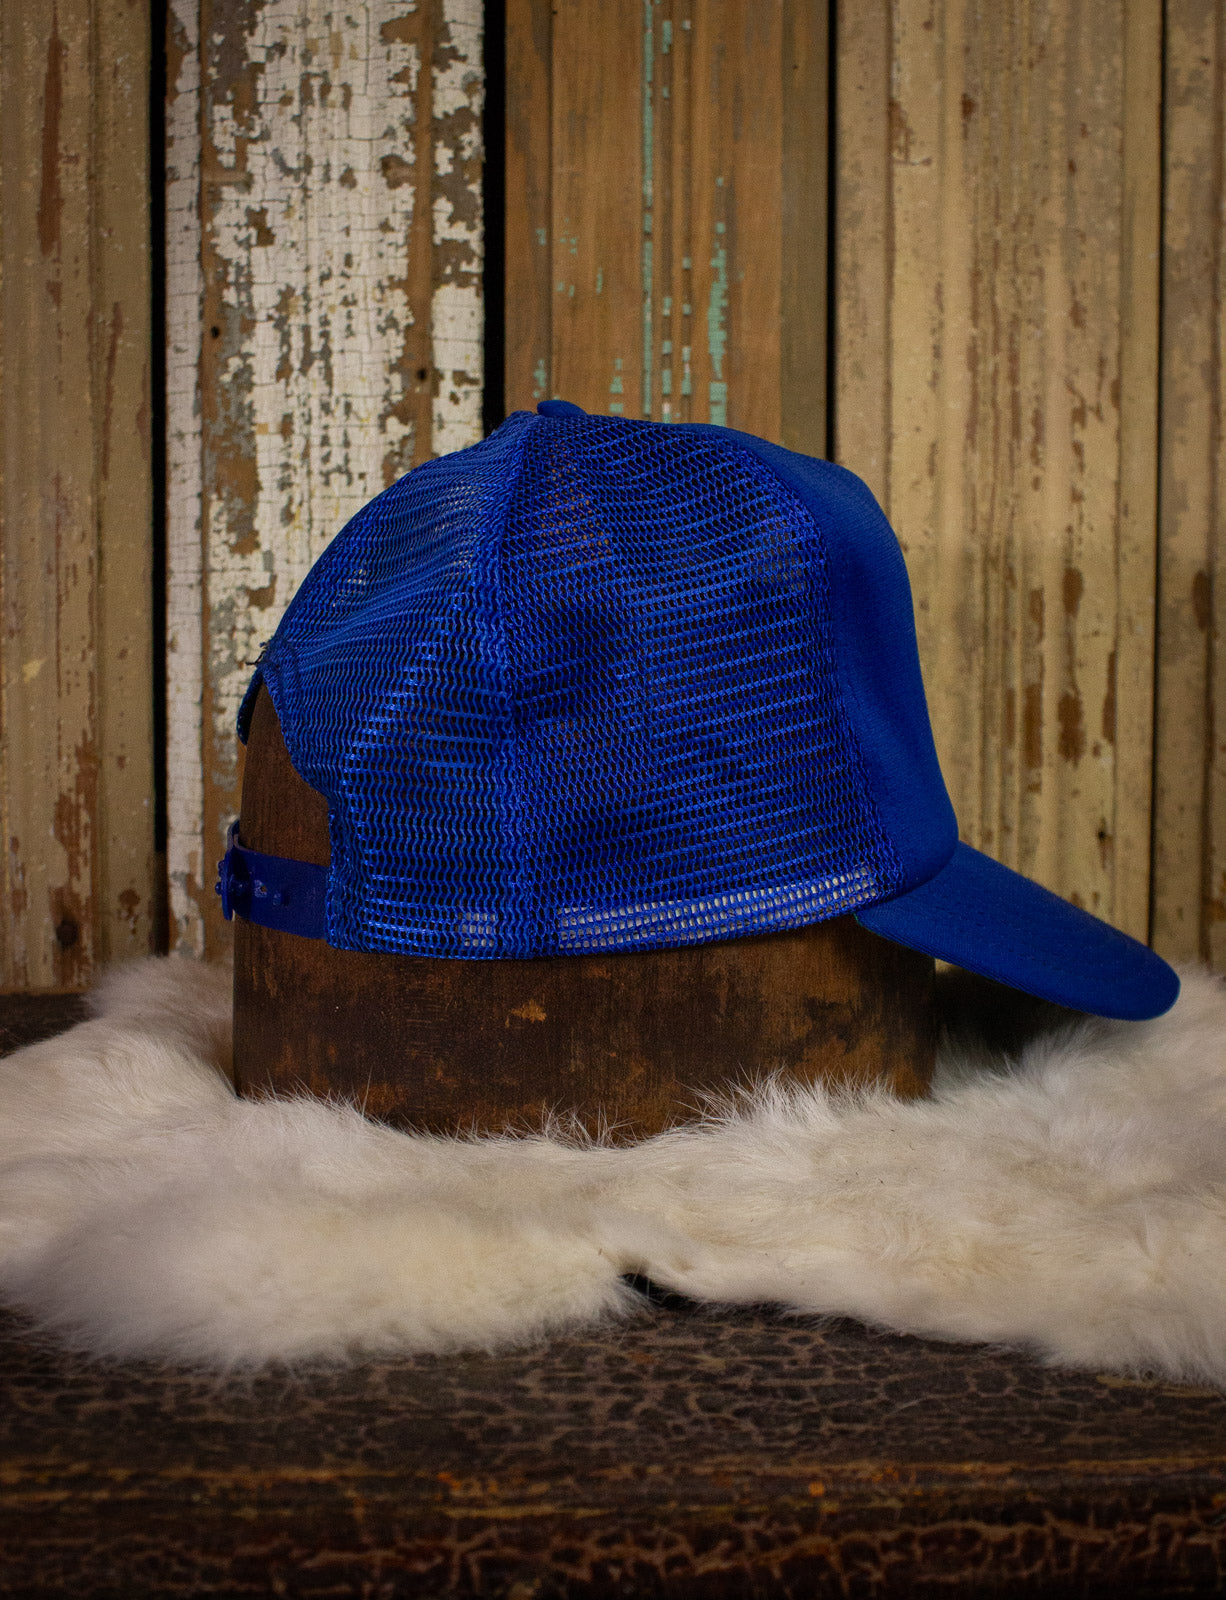 Vintage Sun and Bird Trucker Hat Blue